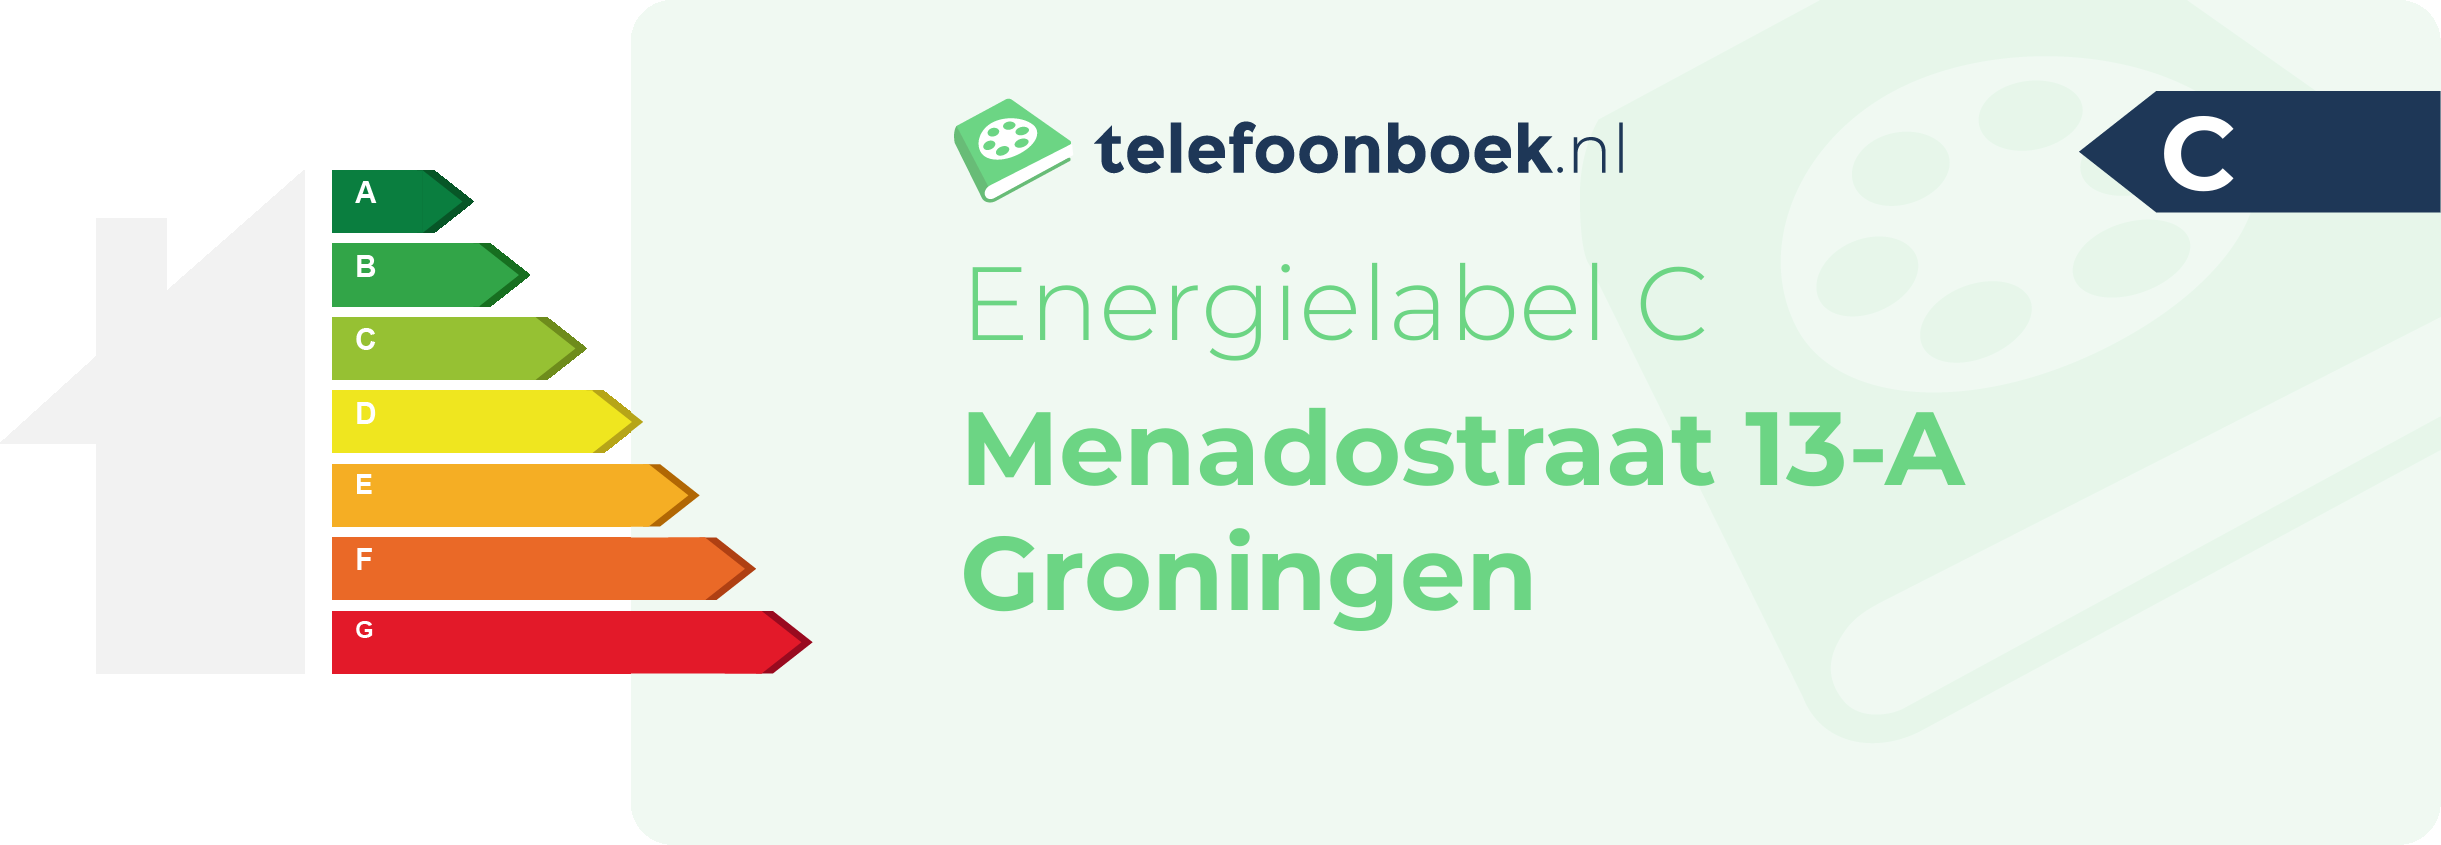 Energielabel Menadostraat 13-A Groningen